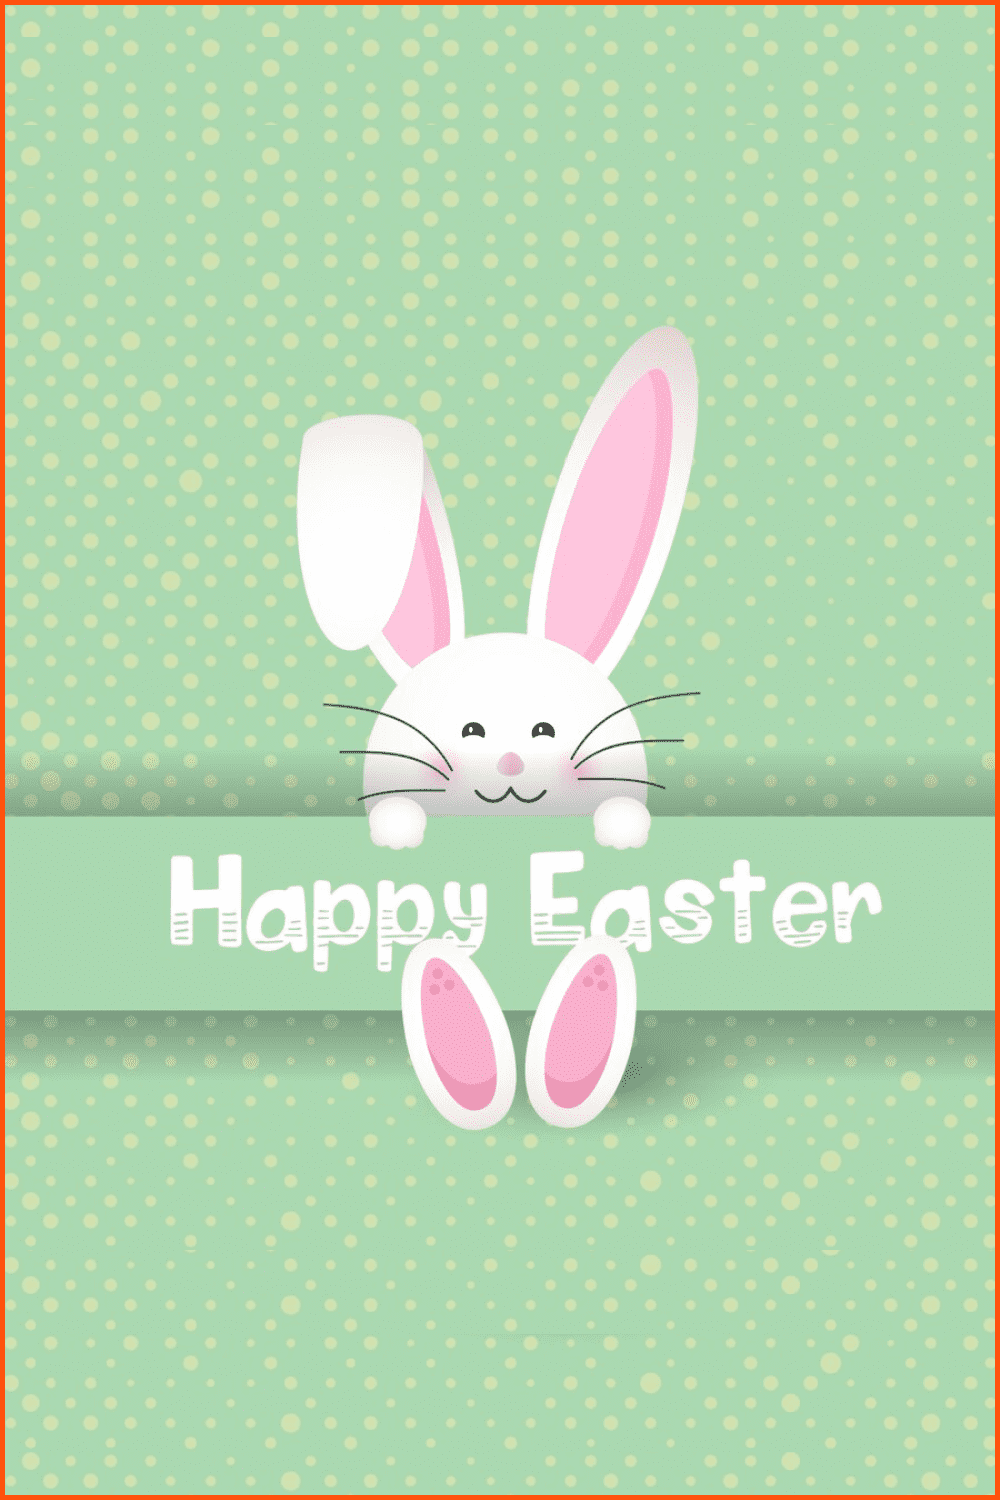 Easter bunny on polka dot.